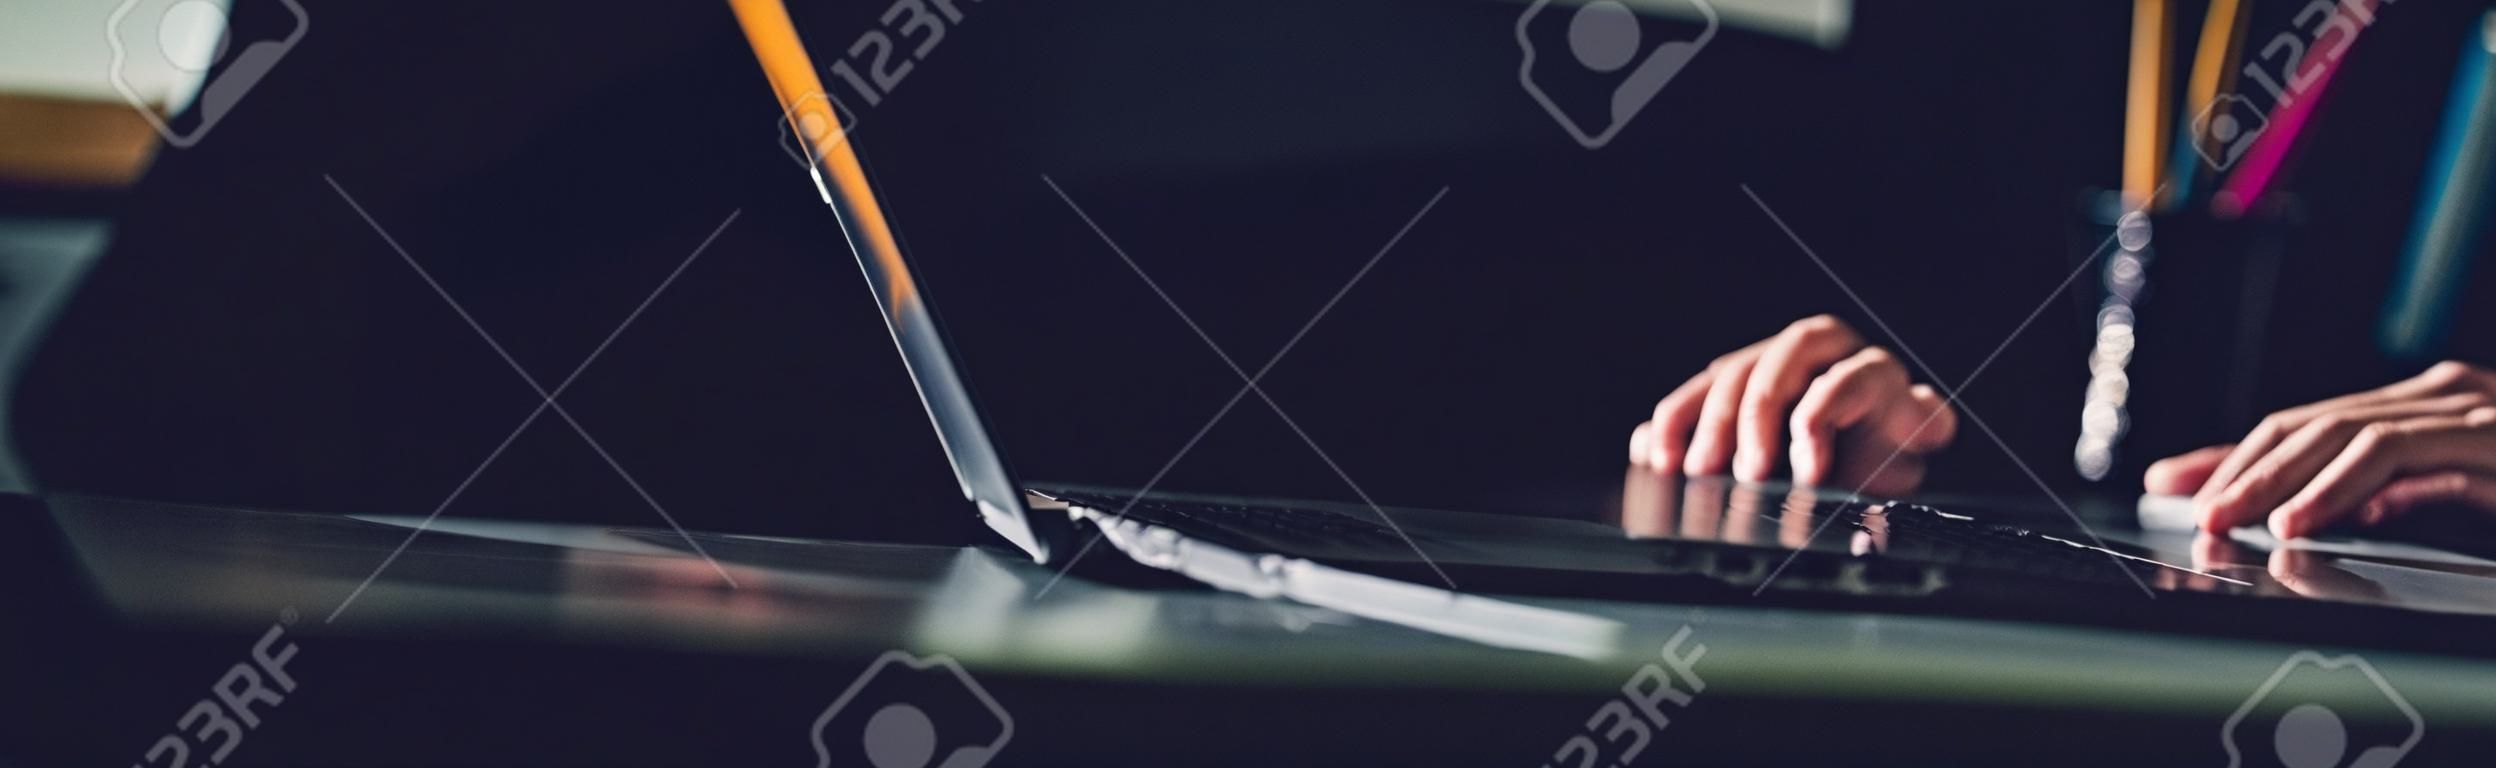 Un homme utilisant un ordinateur portable travaillant sur une nouvelle idée de projet à son bureau dans le bureau tard dans la nuit - bannière web panoramique avec espace copie sur la droite